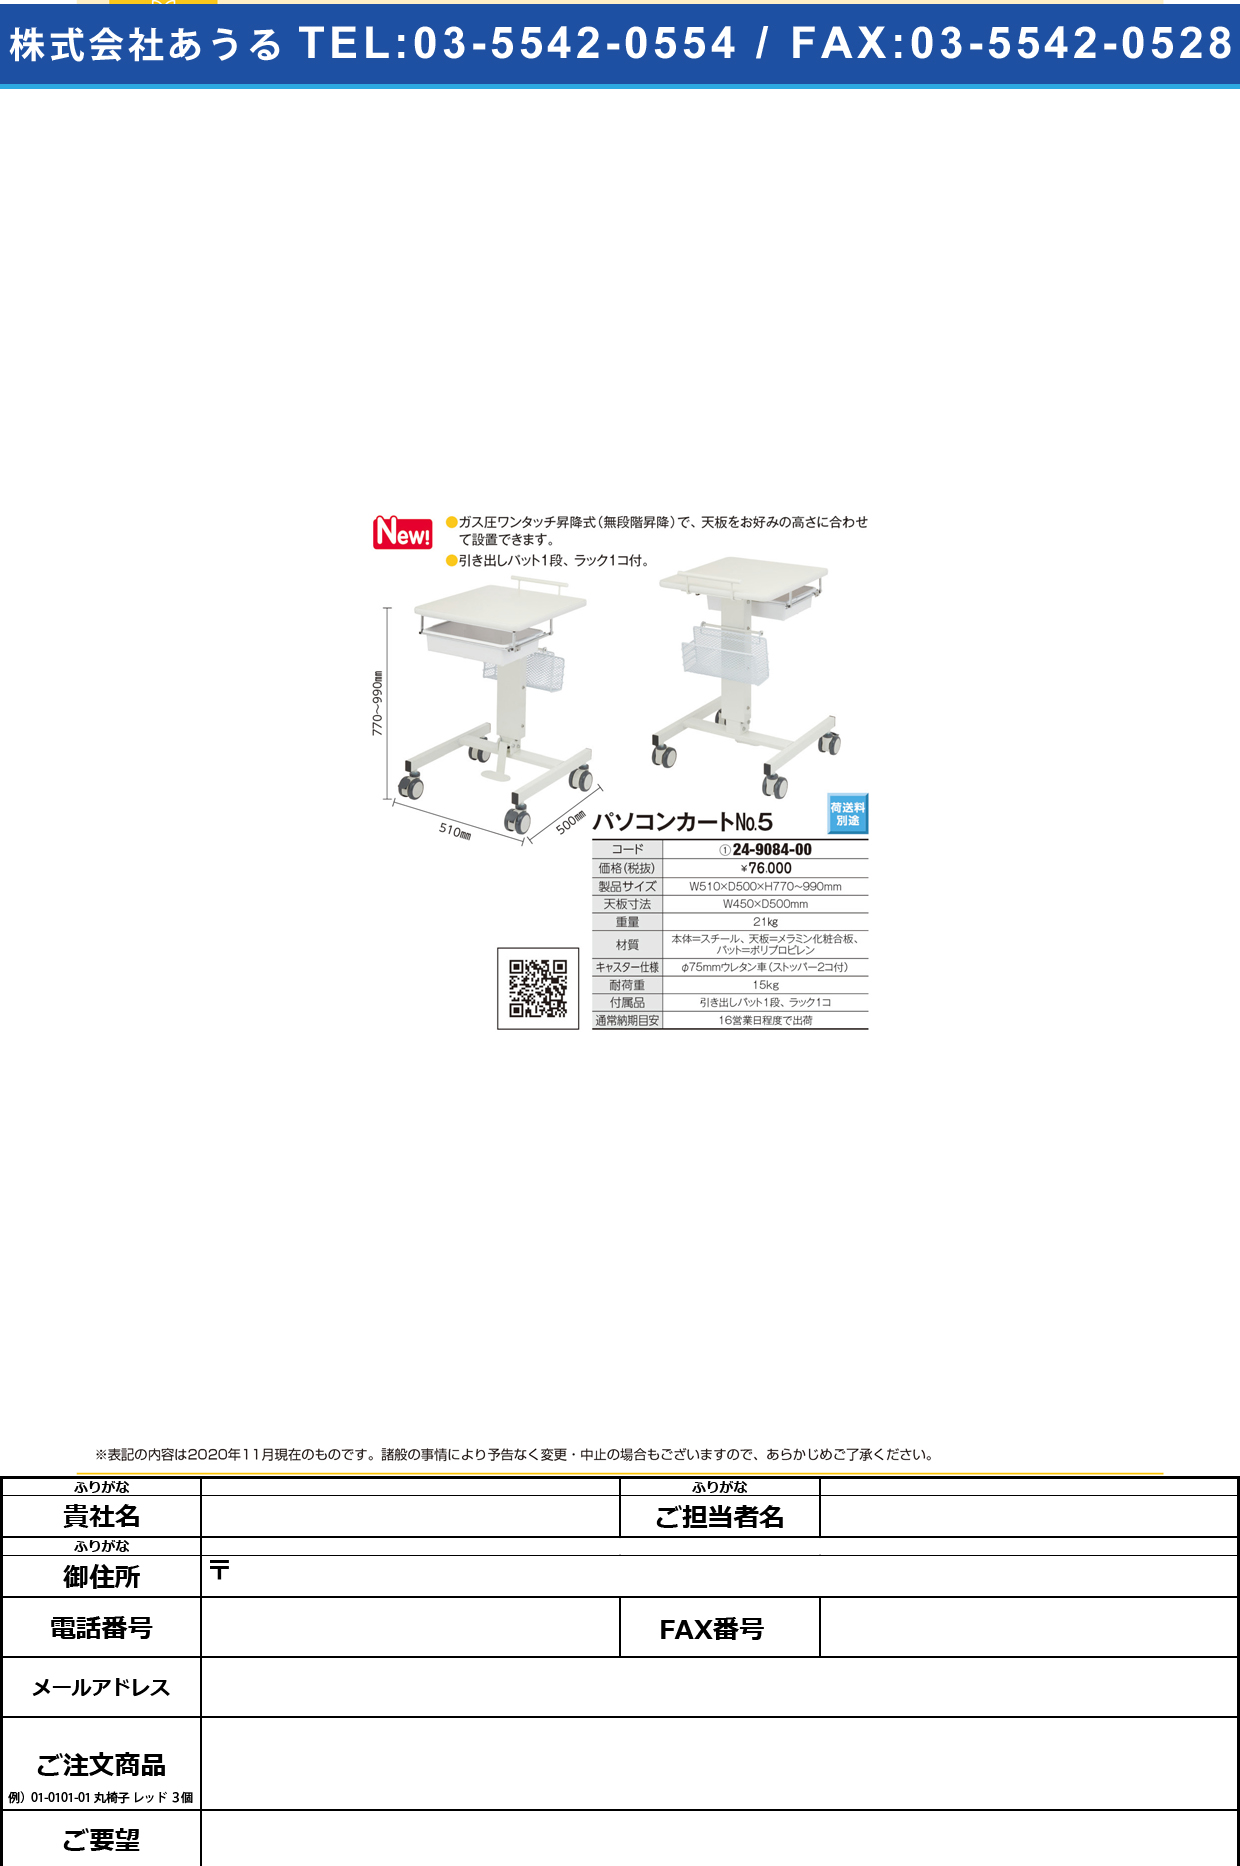 パソコンカート No．5 ホワイト(510X500MM)ﾎﾜｲﾄ(510X500MM)(24-9084-00)【西村製作所】(販売単位:1)